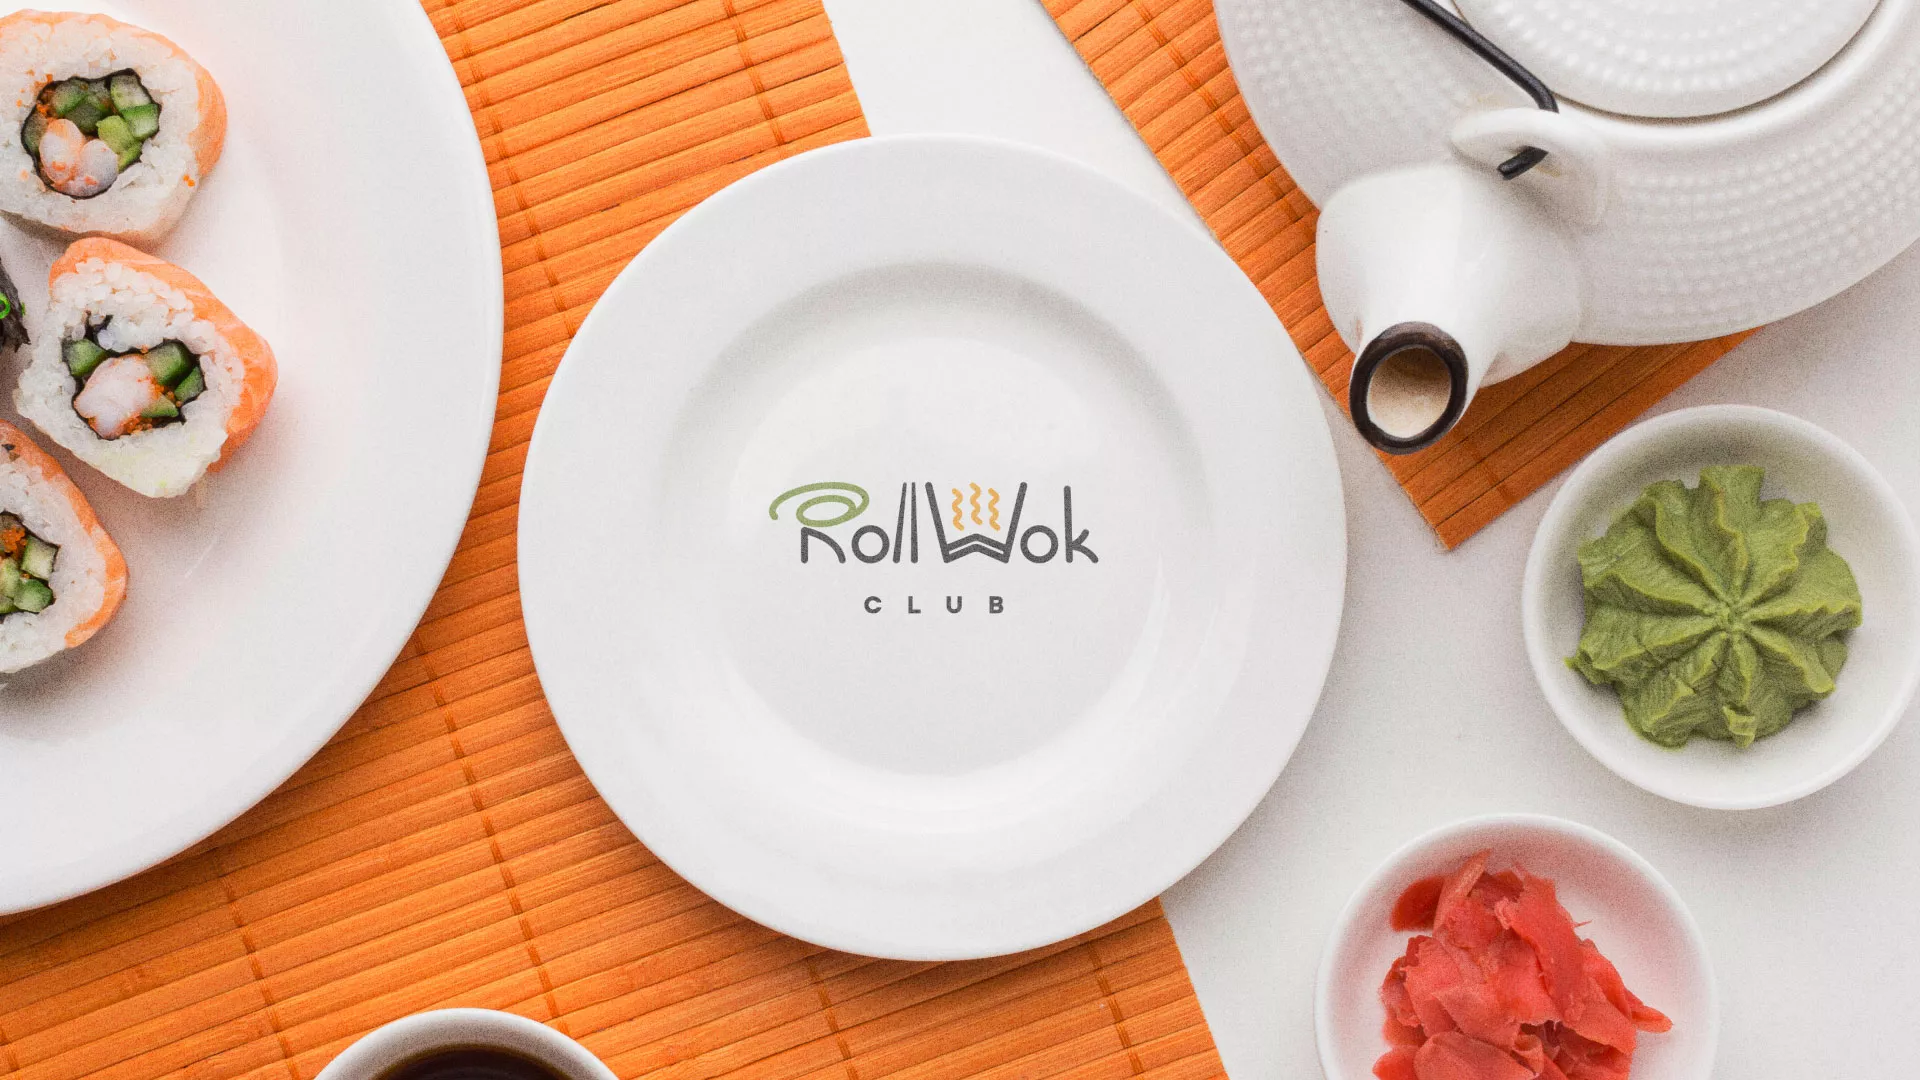 Разработка логотипа и фирменного стиля суши-бара «Roll Wok Club» в Кыштыме